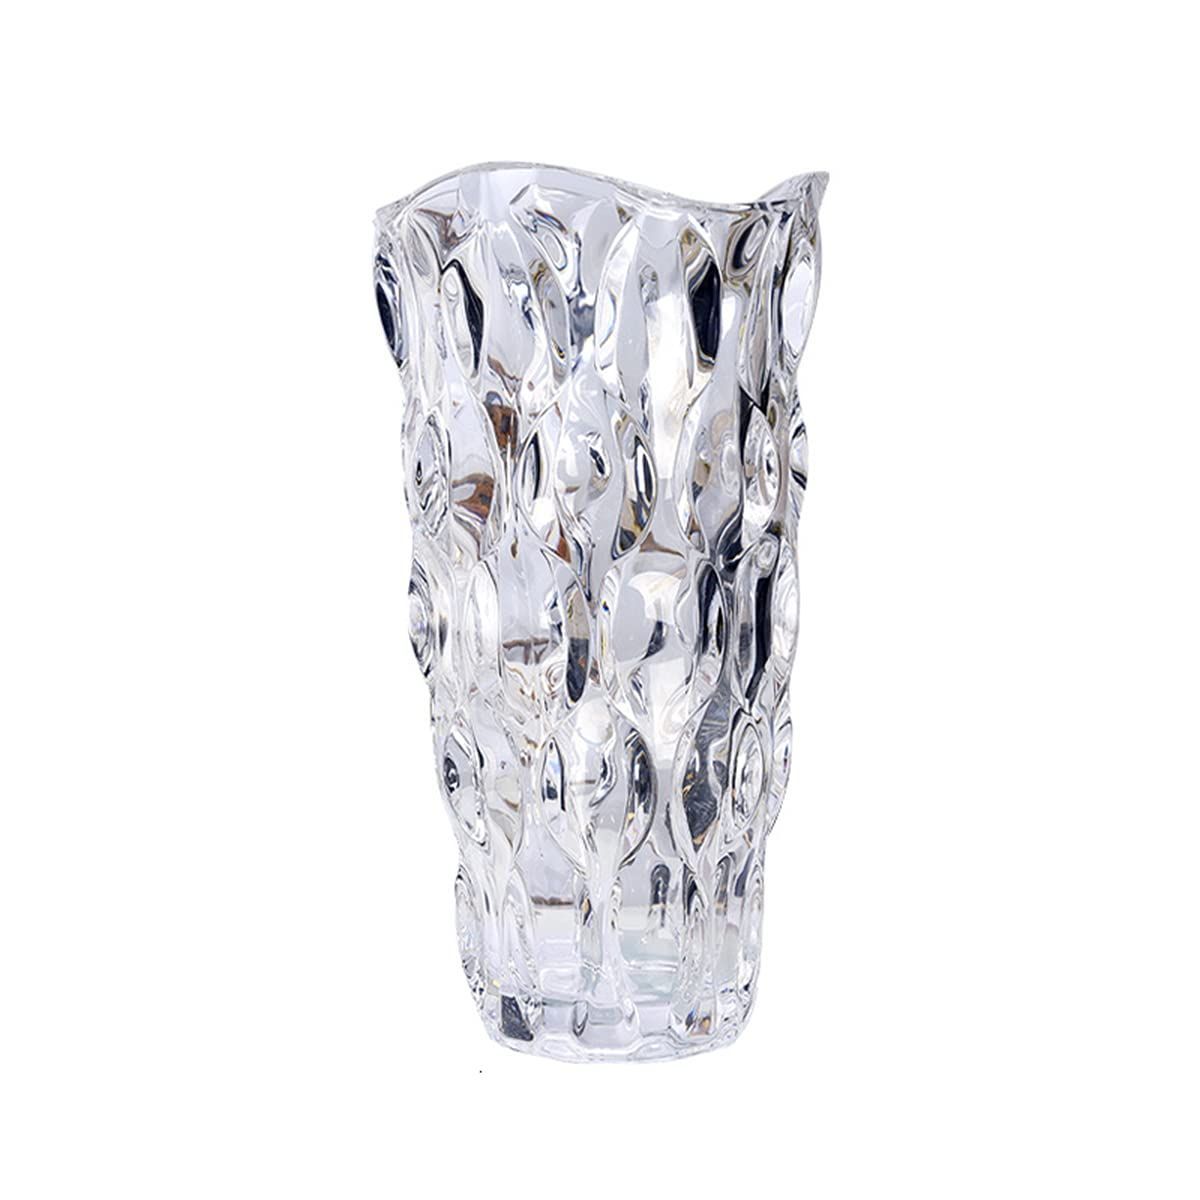 ガラス フラワーベース 透明 花瓶 ガラス おしゃれ 大 花瓶 北欧 花瓶 25cm グラデーション 現代 シンプル 透明 広口 花器 部屋 玄関  リビング インテリア プレゼント - メルカリ